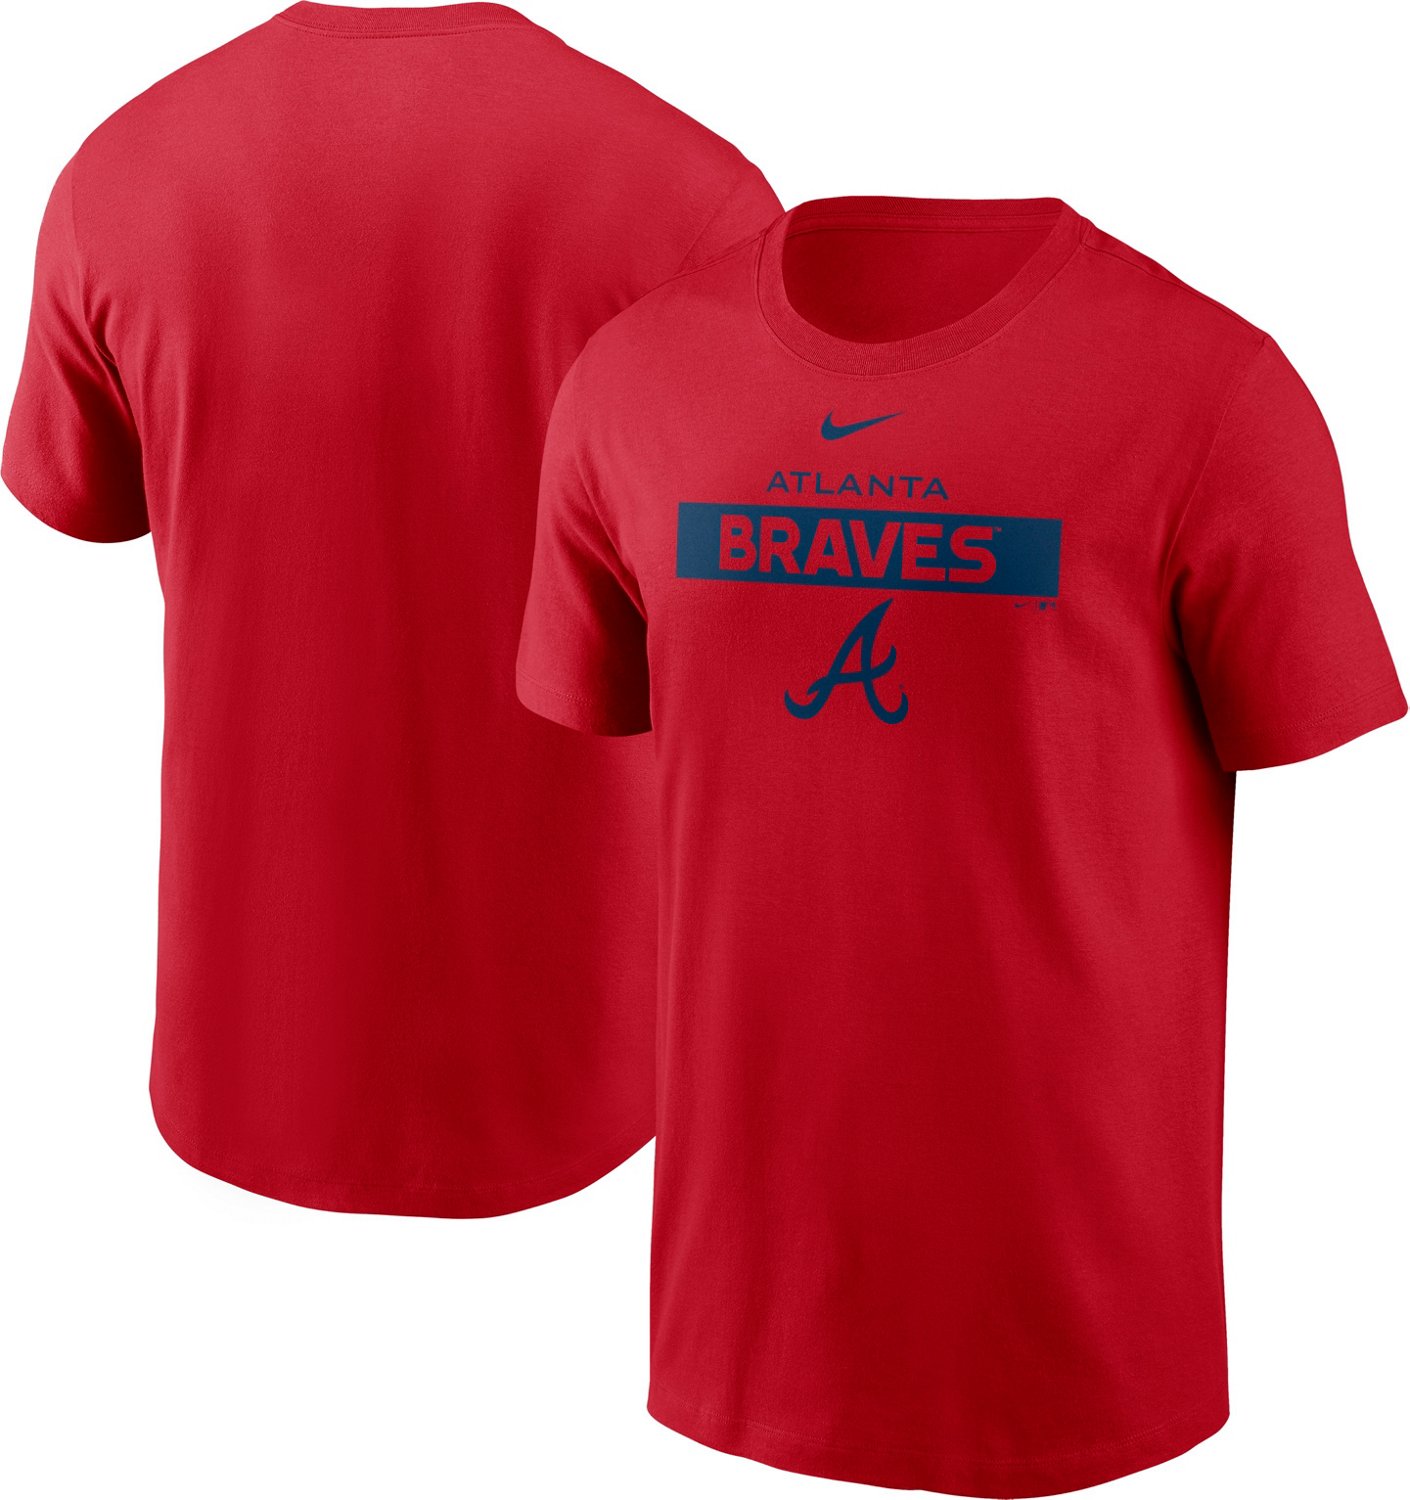 Nike Men's Atlanta Braves Team Issue T-shirt